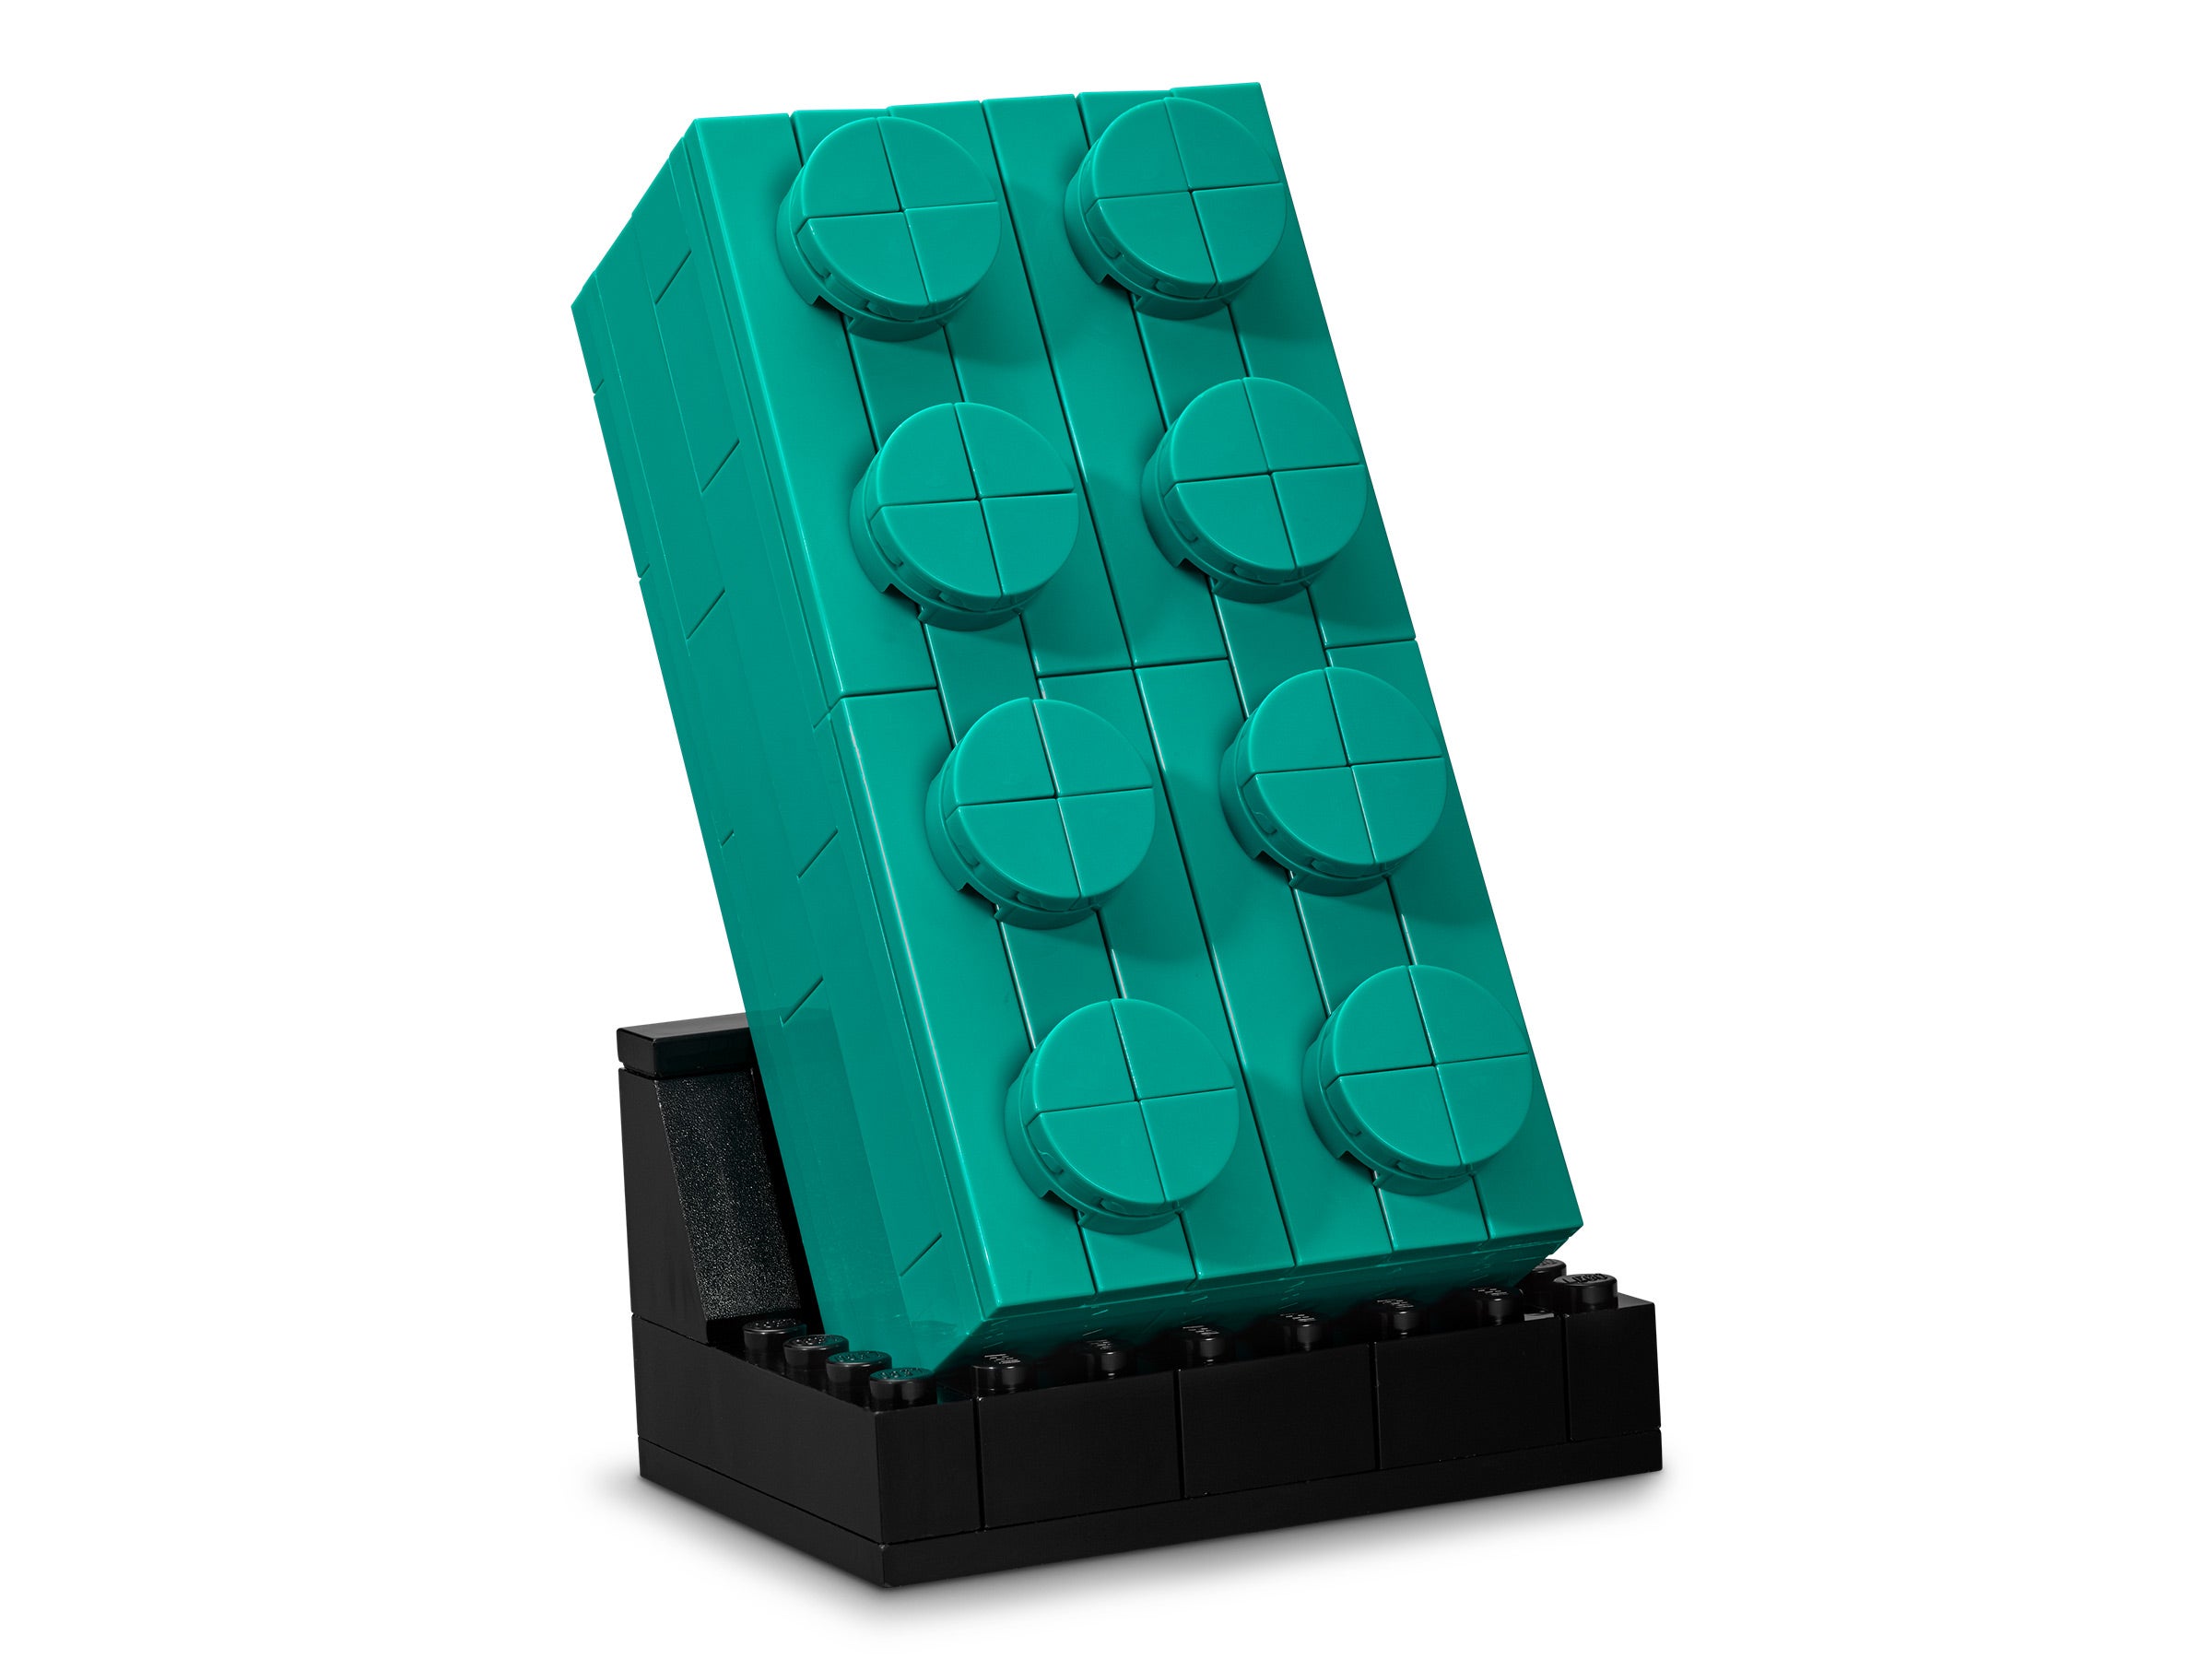 2x Brick Brick 1x12 12x1 Beige//Tan 6112 New Lego